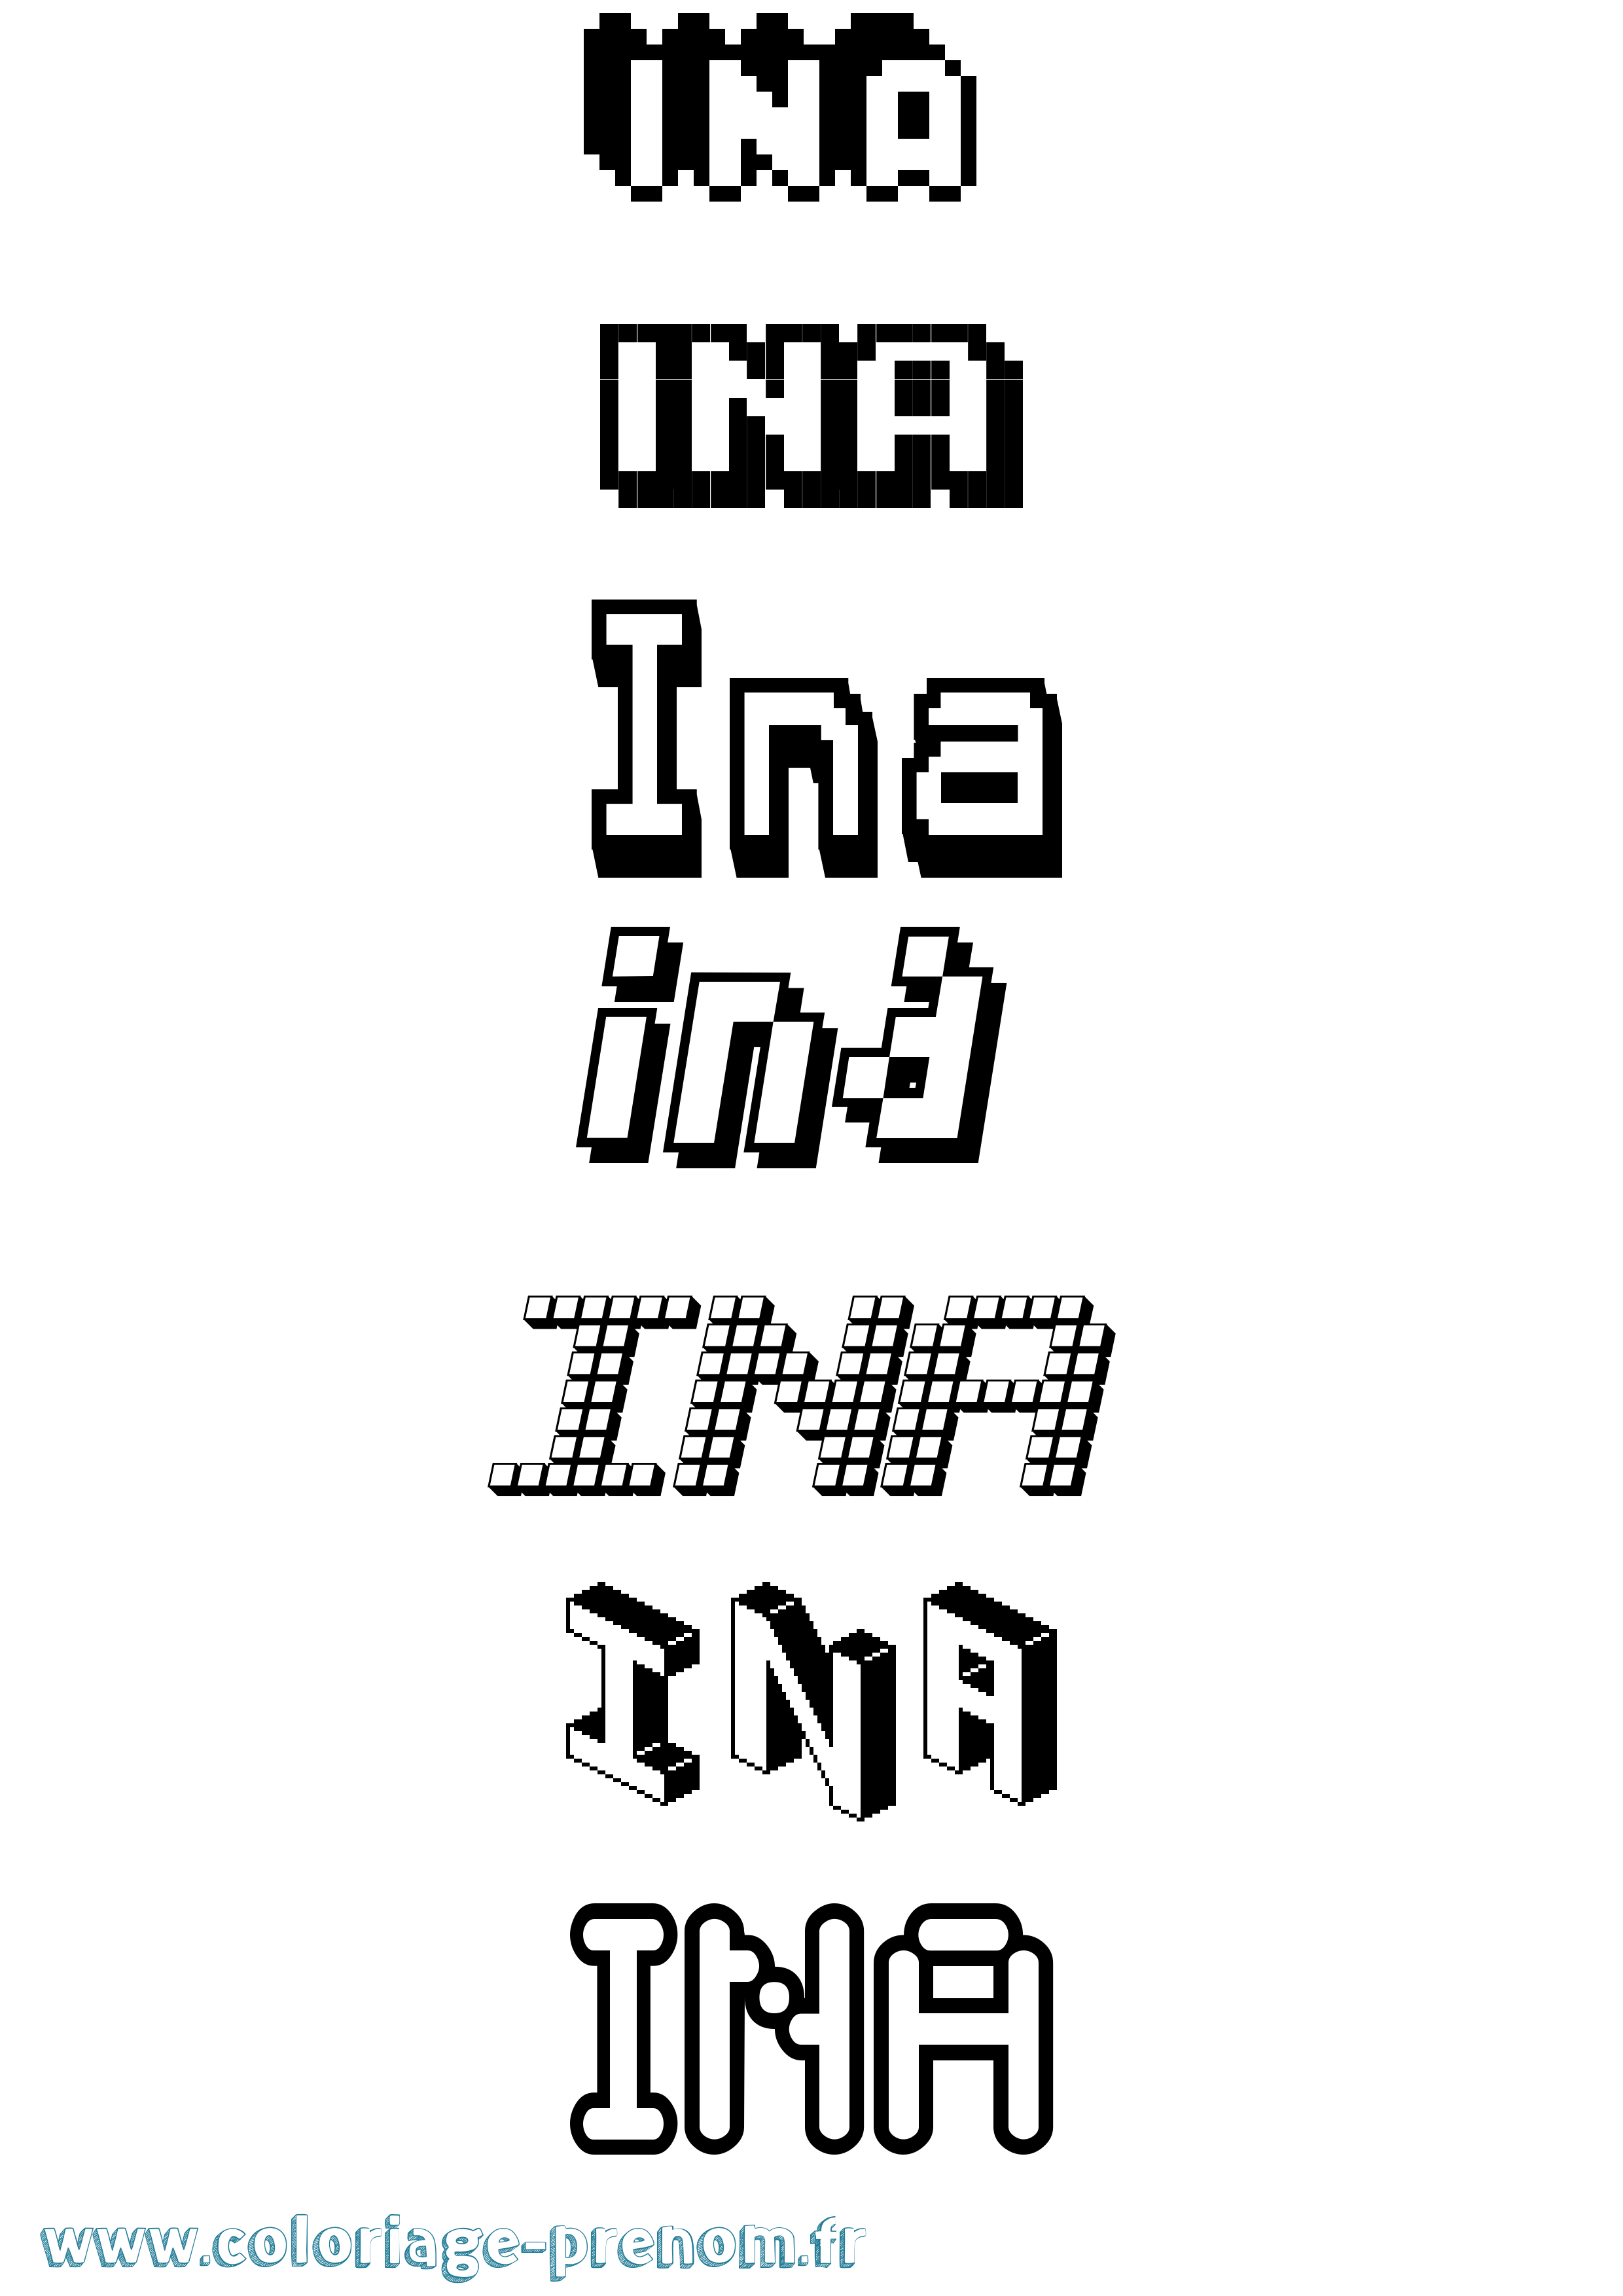 Coloriage prénom Ina Pixel